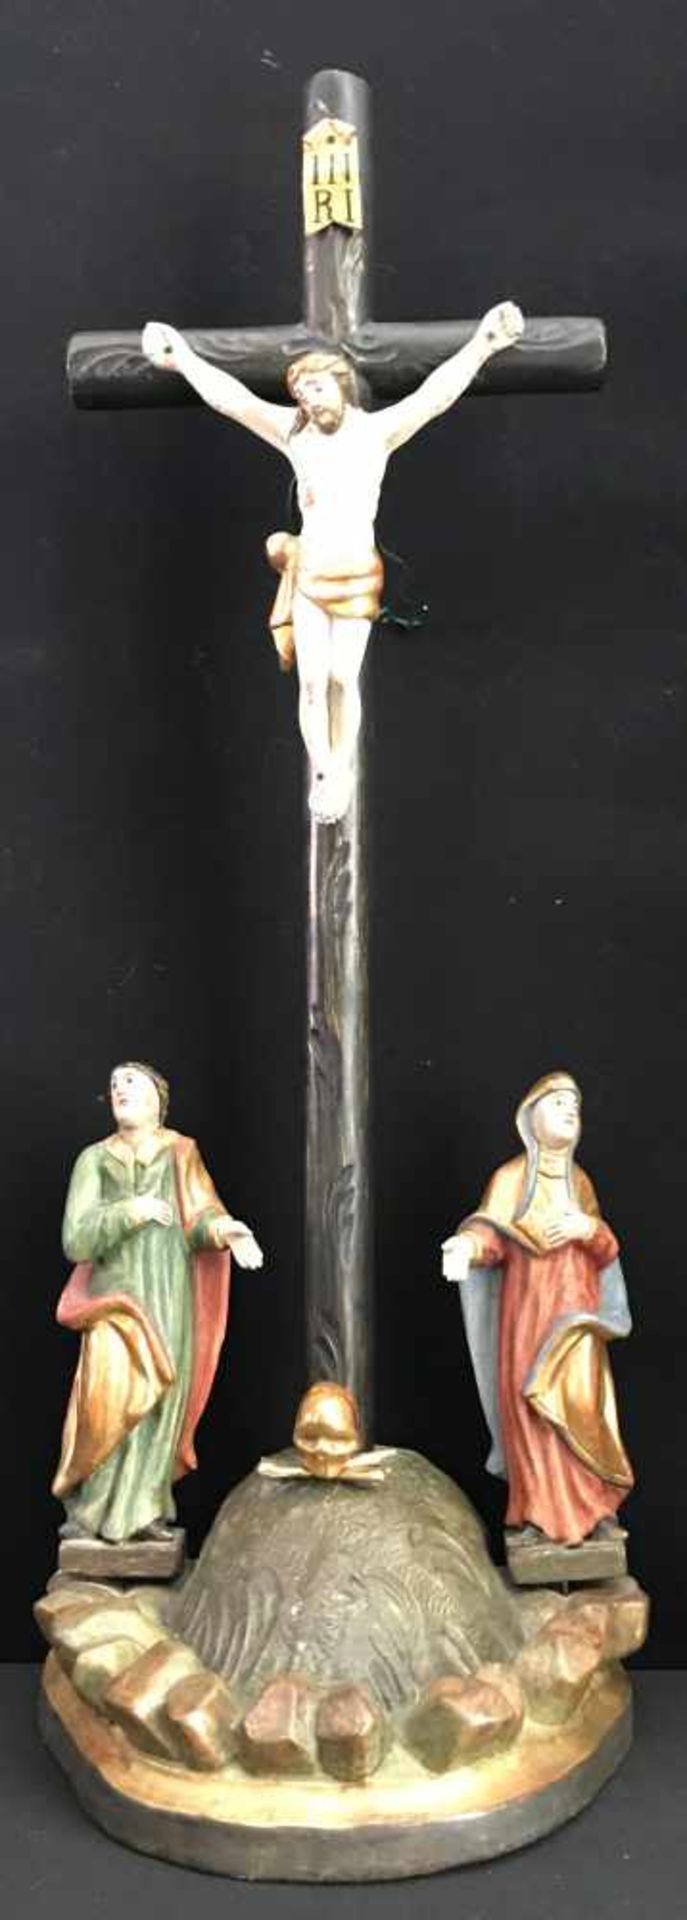 Süddeutsch, 19. Jh., Standkreuz bzw. Kruzifix mit den Assistenzfiguren Maria und Johannes der